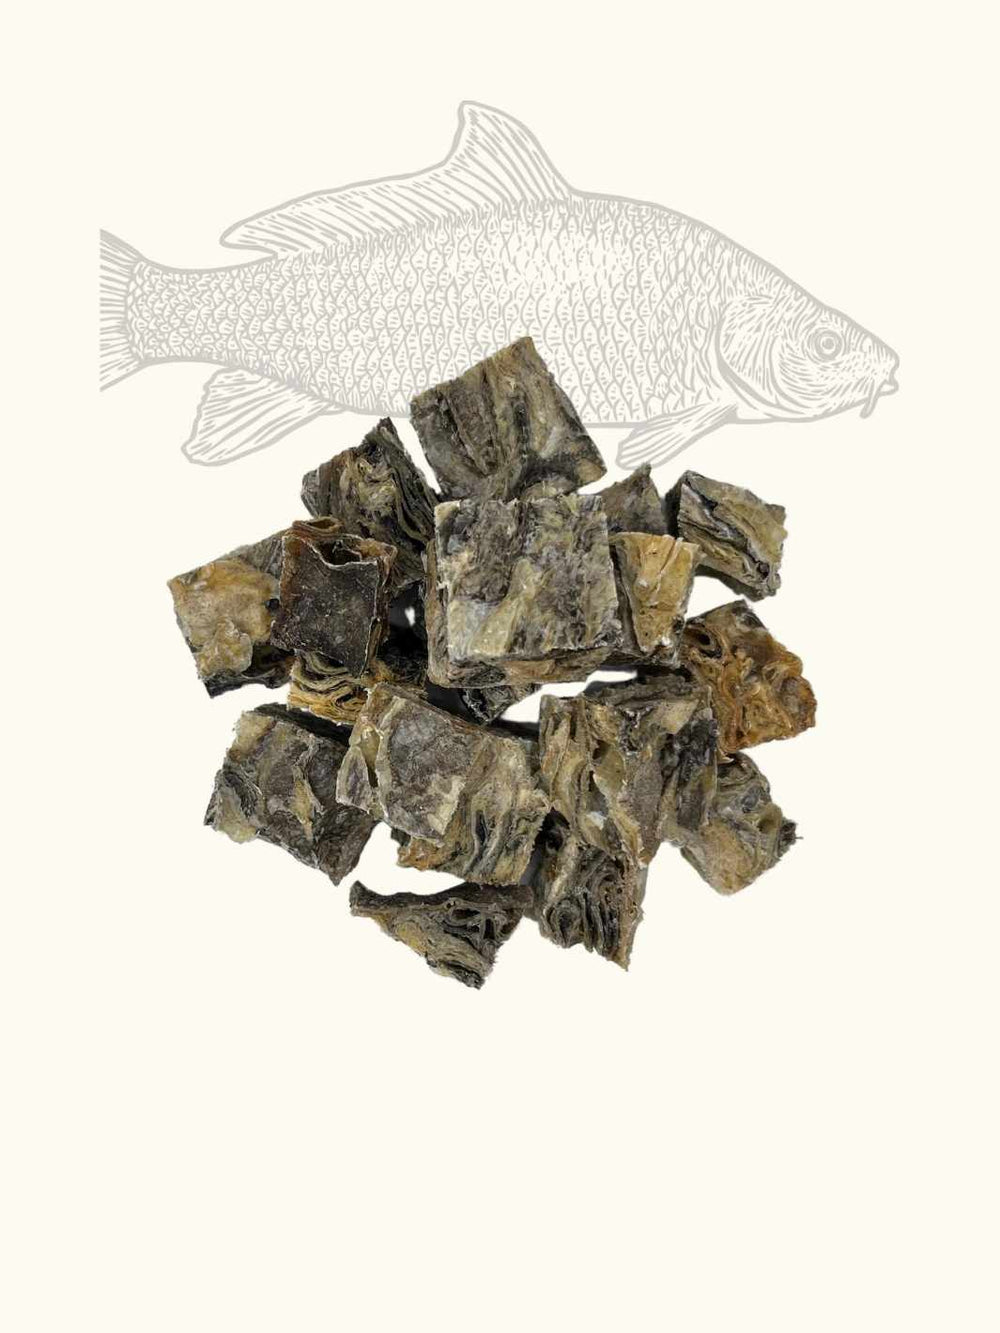 Cubes de poisson (Morue) - #friandise_naturelle_pour_chien# - Truffe delice